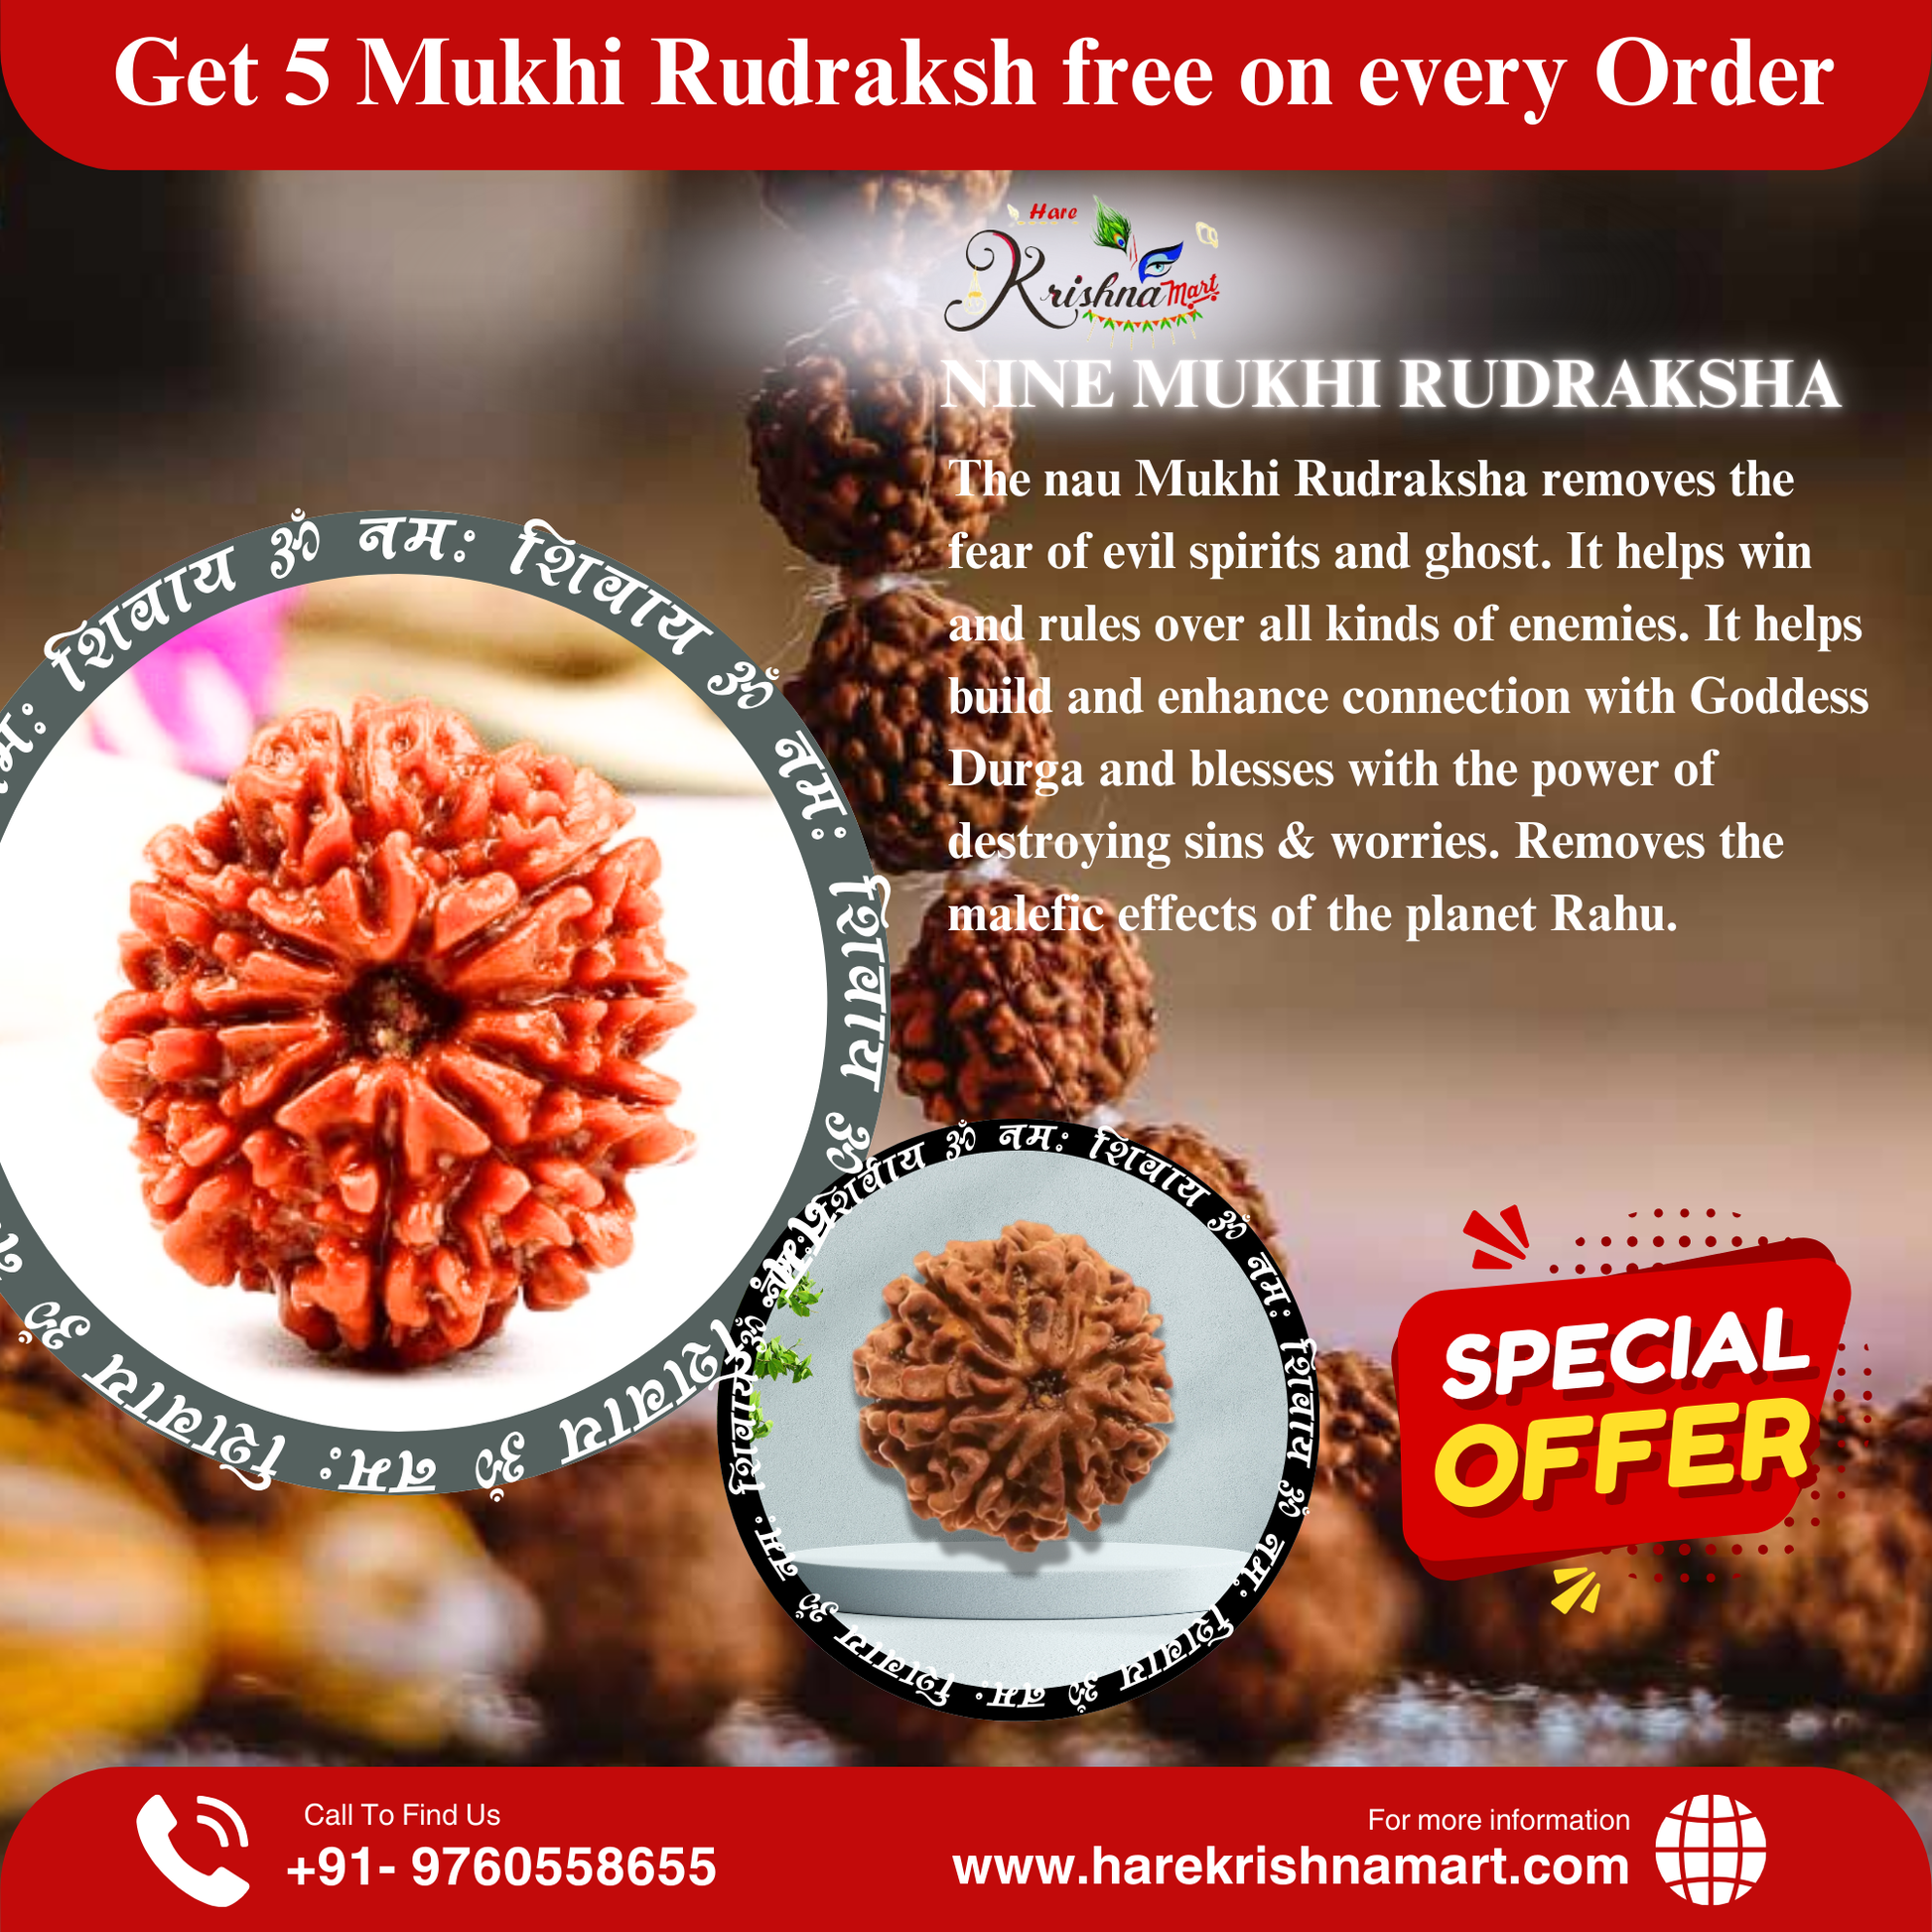 9 Mukhi Rudraksha (Nepal) | 9 mukhi Rudraksha Original | 9 mukhi Rudraksha Benefits | 9 mukhi Rudraksha Price|9 mukhi |9 mukhi original|certifie rudraksha| certified rudraksha|certified 9 face rudraksha|original 9 face rudraksha|original 9 mukhi|ketu rudraksha | devi rudraksha|9 grah rudraksha